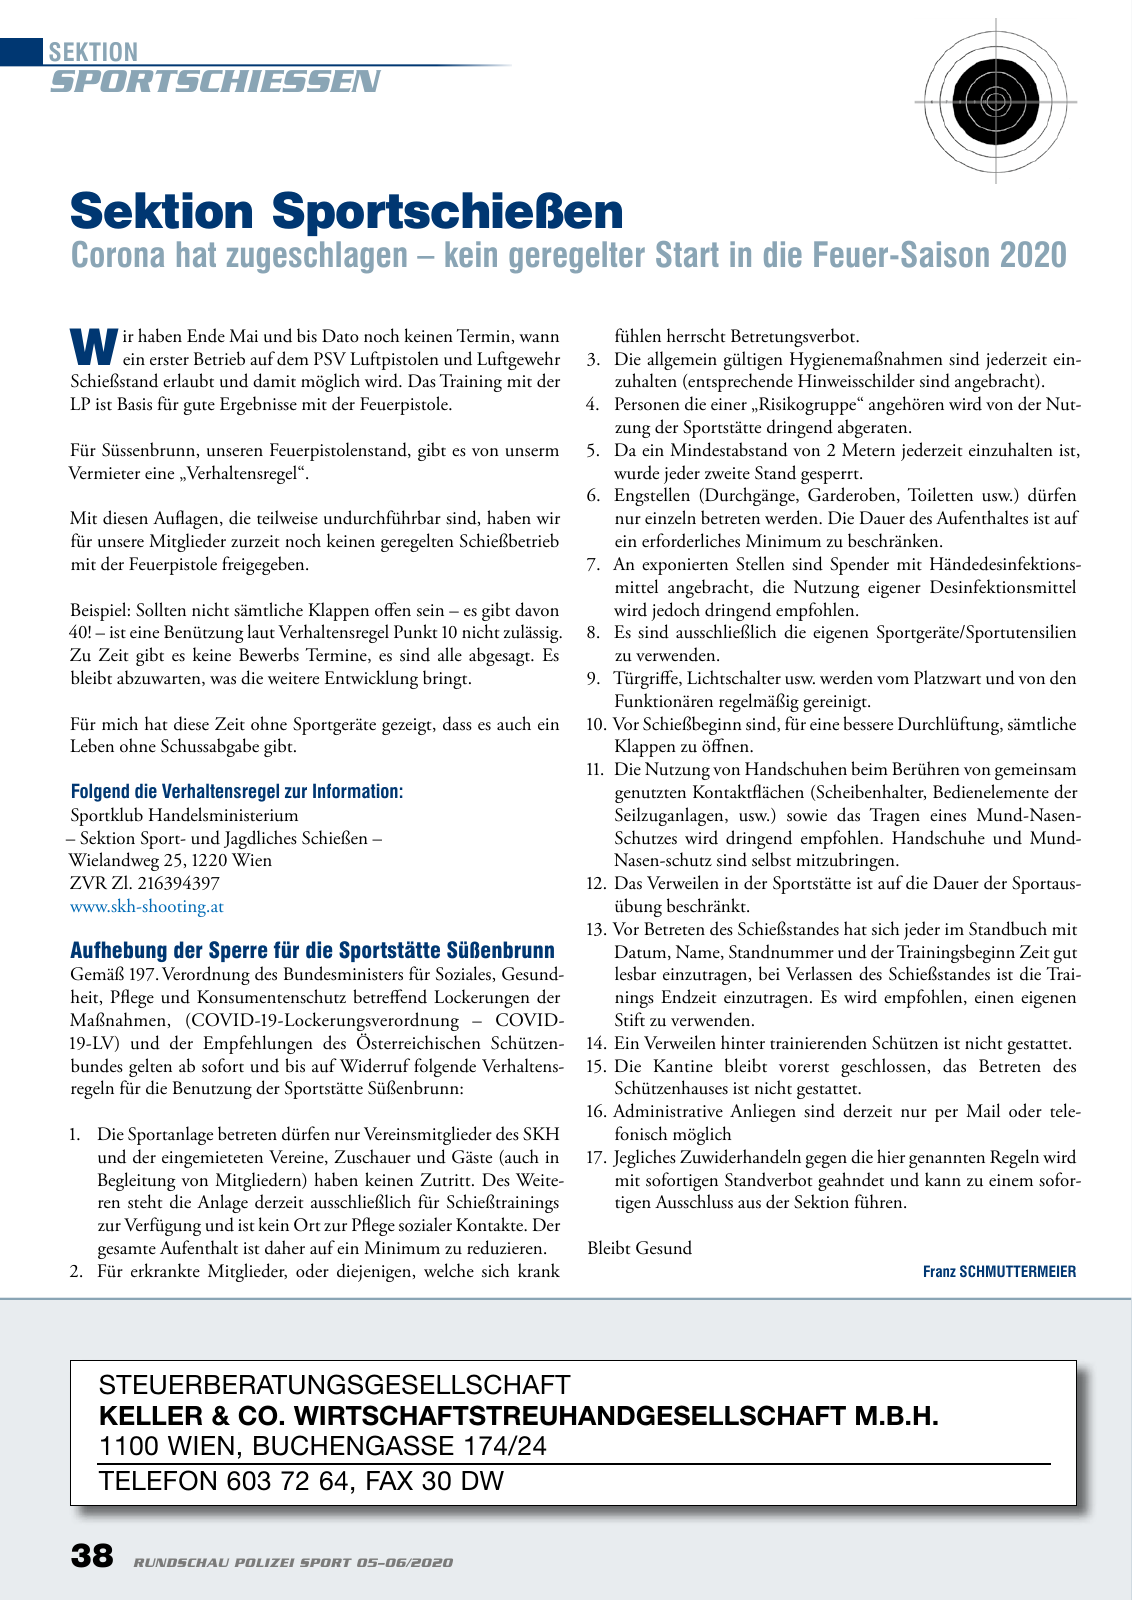 Vorschau Rundschau Polizei Sport 05-06/2020 Seite 38